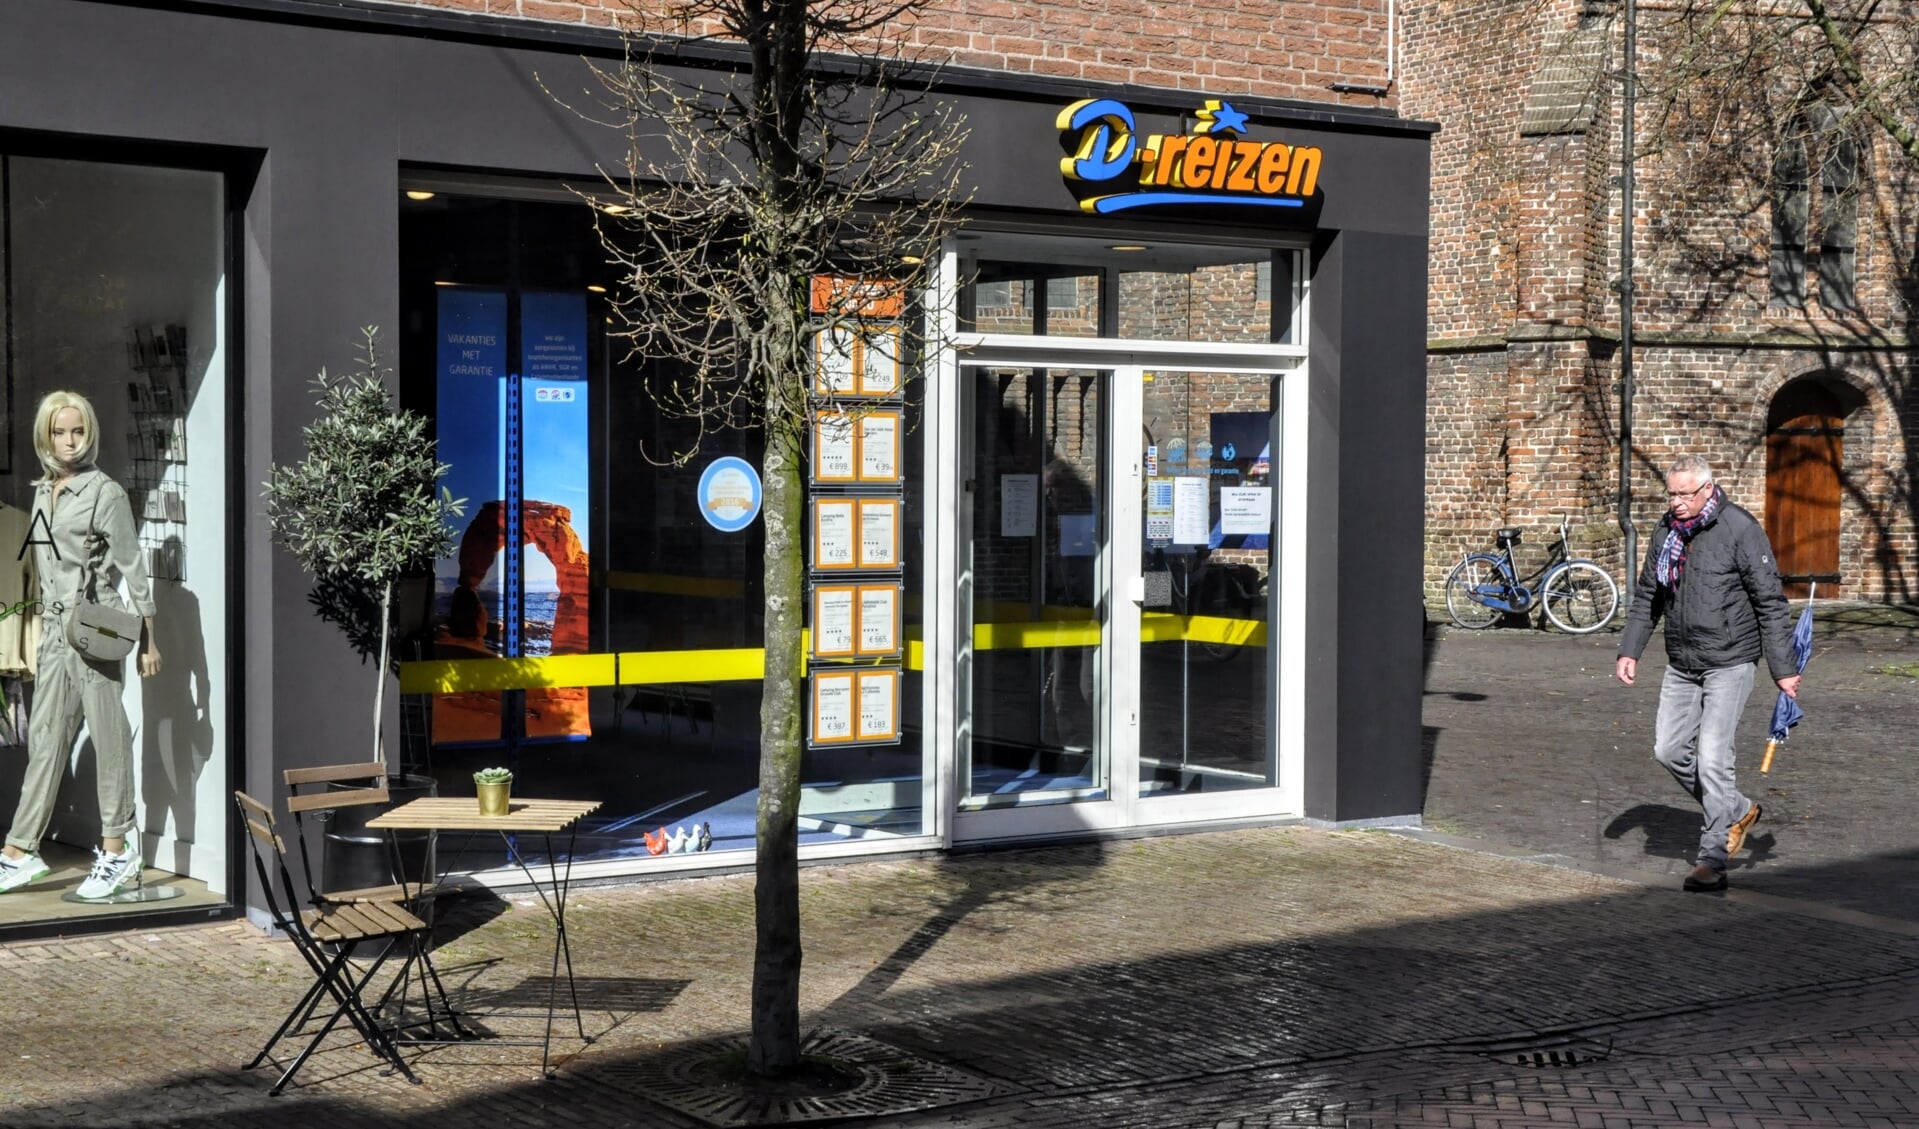 D-Reizen, met tot voor kort ook een filiaal in Leusden, werd in april dit jaar wel failliet verklaard door onder meer de coronacrisis.